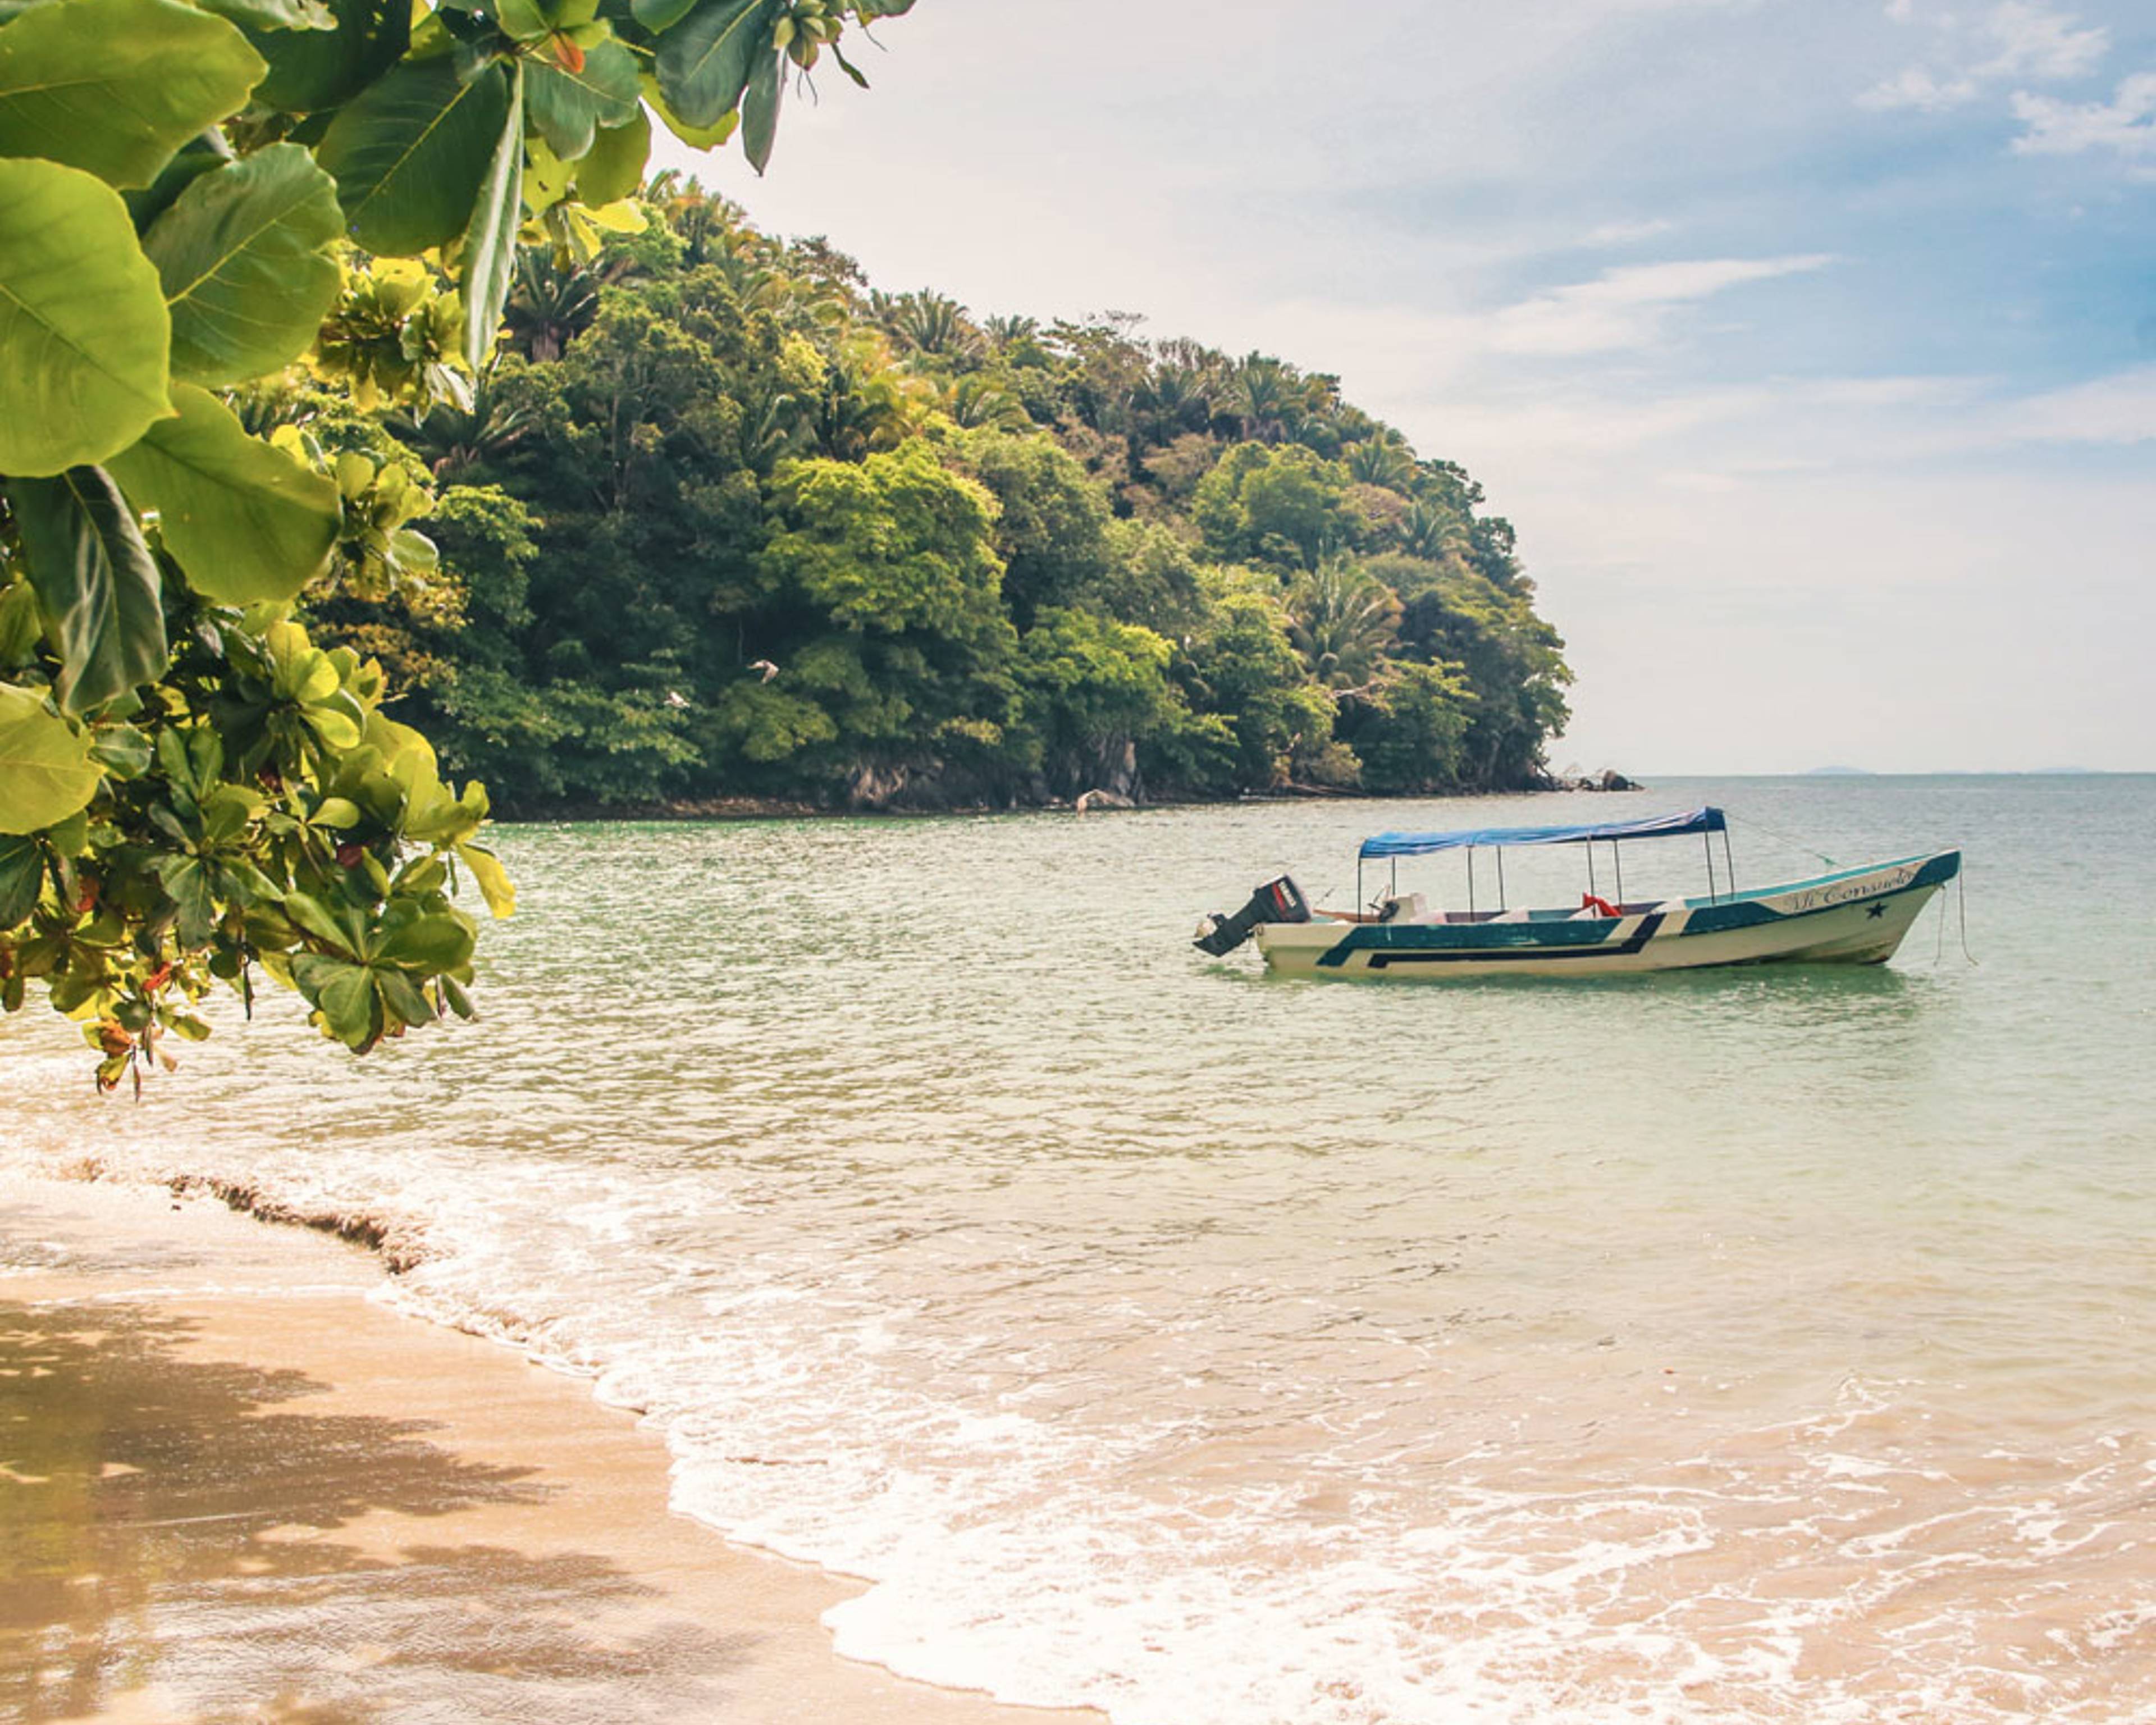 Découvrez les plus belles plages lors de votre voyage au Honduras 100% sur mesure